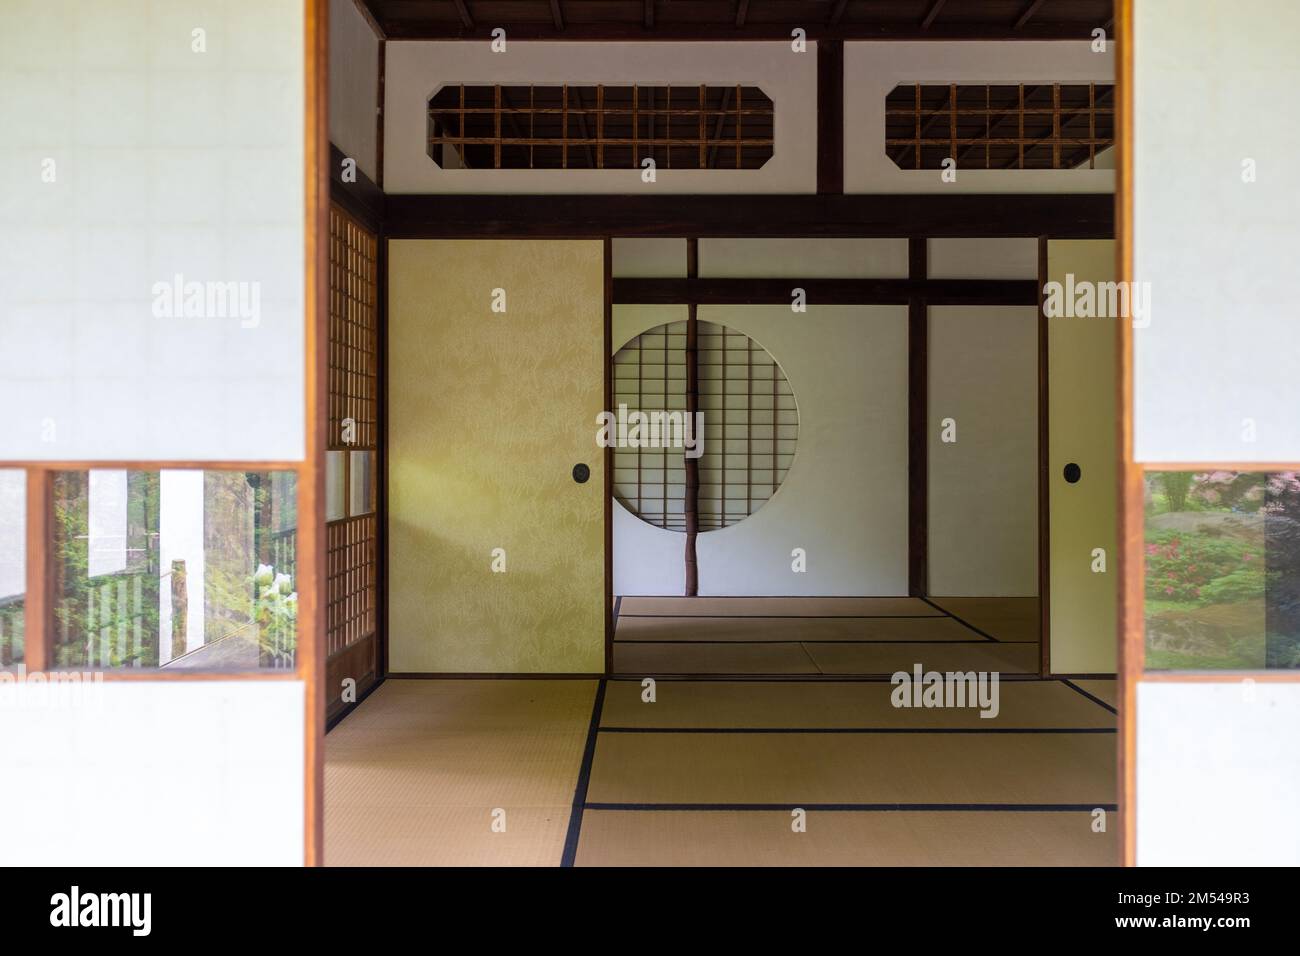 L'intérieur d'une maison japonaise traditionnelle vue de l'extérieur. Pris un jour de printemps couvert. Banque D'Images